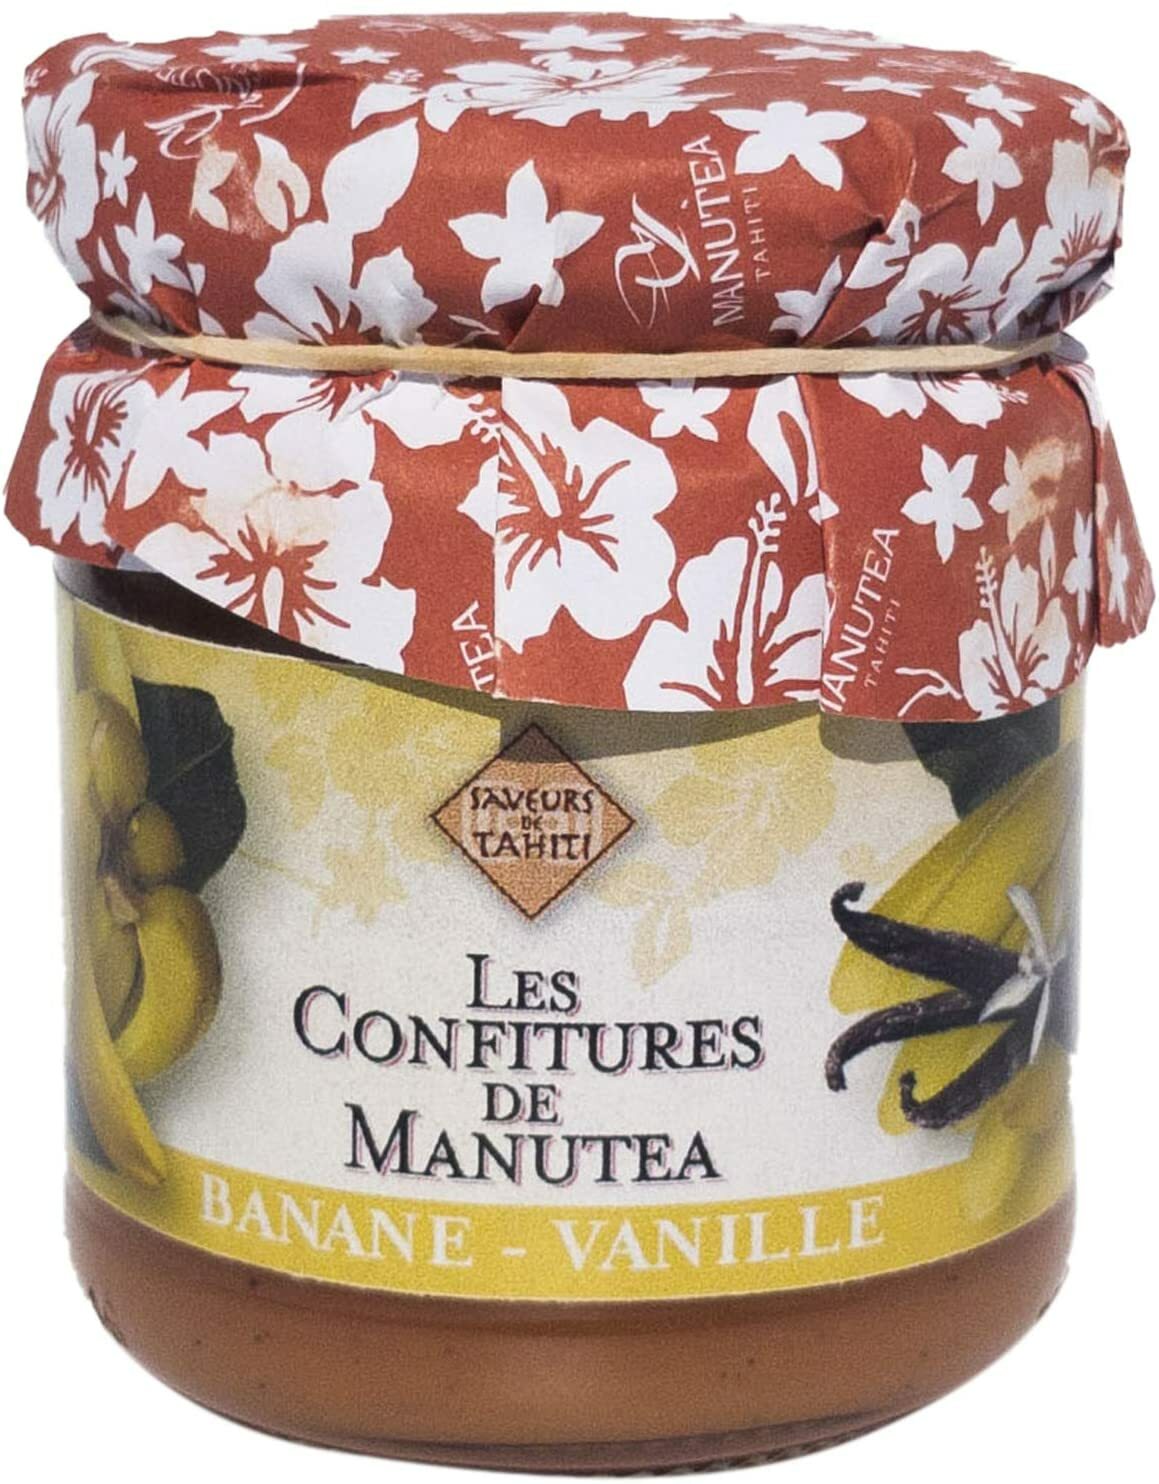 Manutea Bananen und Vanillemarmelade aus Tahiti